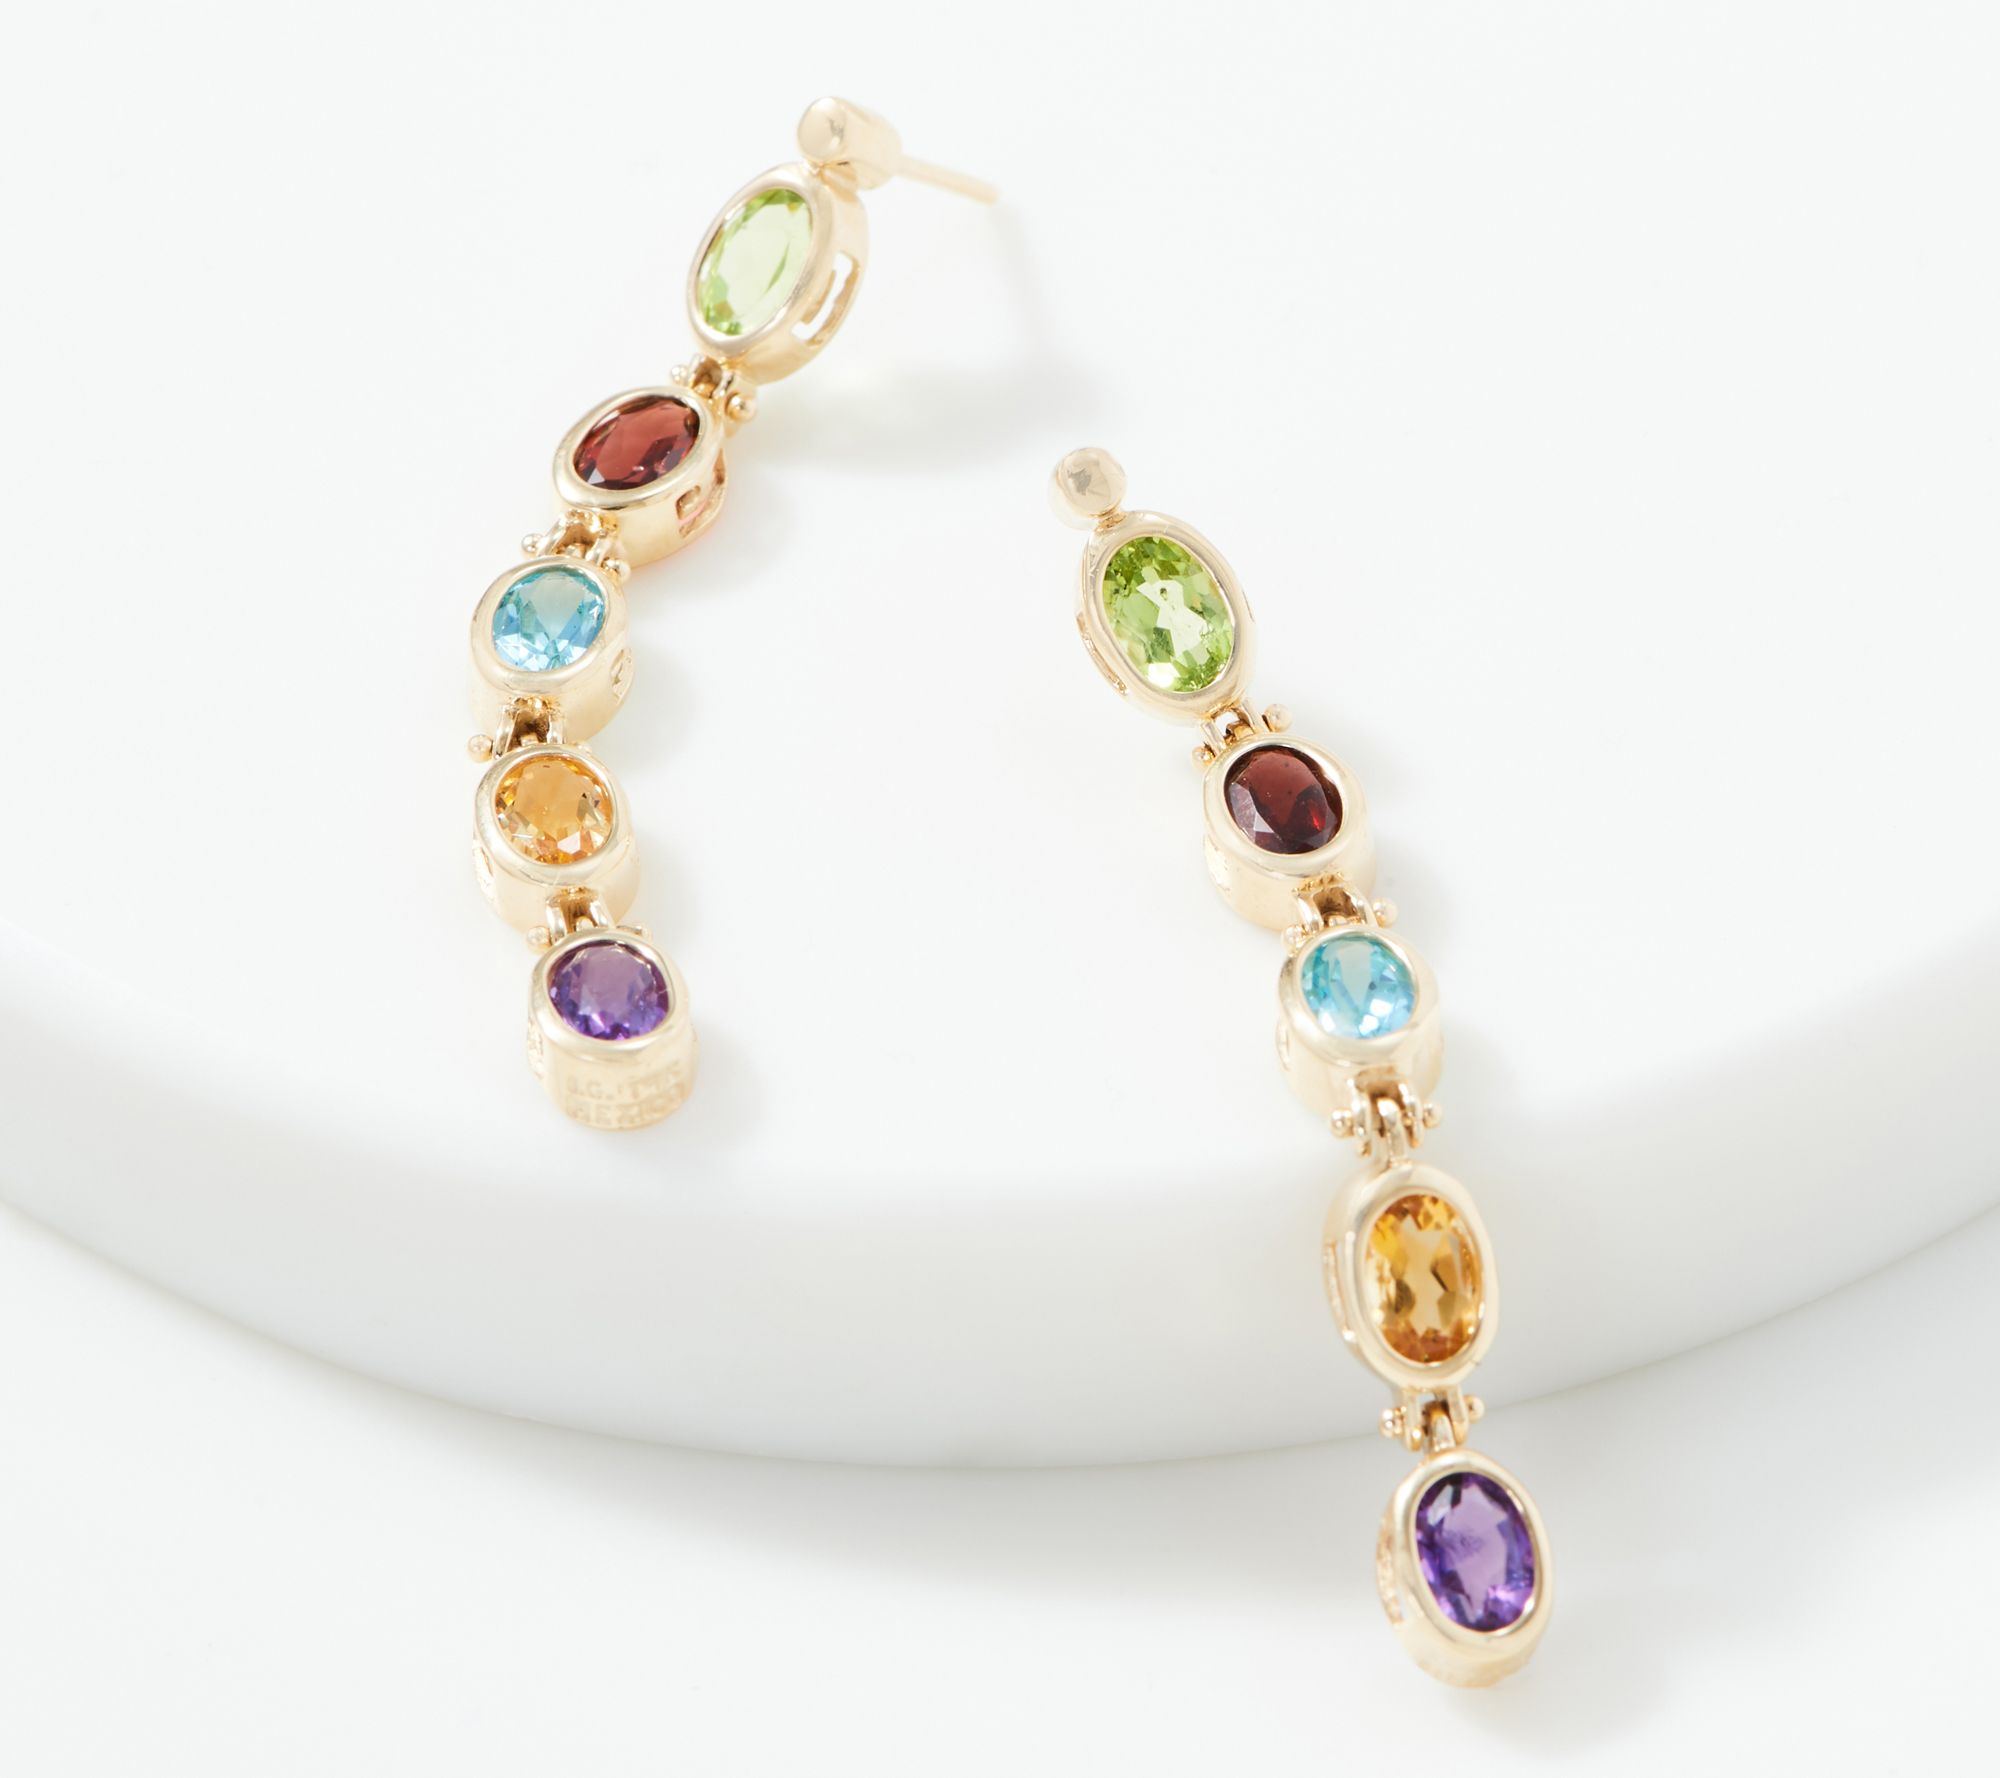 RYLOS Earrings For Women 14K Yellow Gold Diamond & Star Ruby Earrings 6X4MM Color Stone Gemstone Jewelry For Women Gold Earrings 